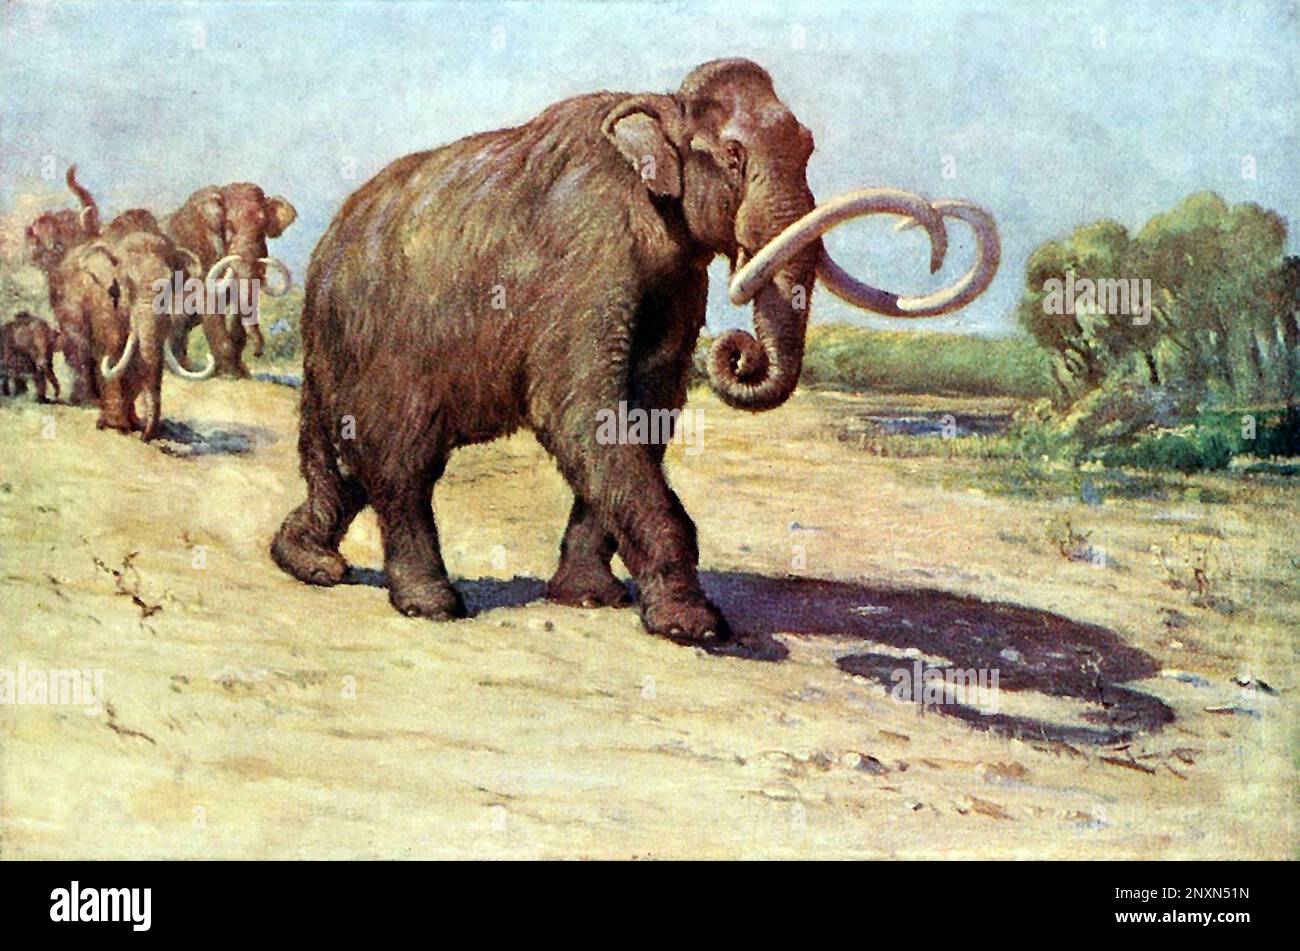 Il mammut colombiano (Mammuthus colombi) è una specie estinta di mammut che abitava le Americhe a nord fino agli Stati Uniti del Nord e a sud fino alla Costa Rica durante l'epoca del Pleistocene. Illustrazione di Charles R. Knight (1874,Ai1953), basata sul campione AMNH (precedentemente M. jeffersonii), 1909. Foto Stock